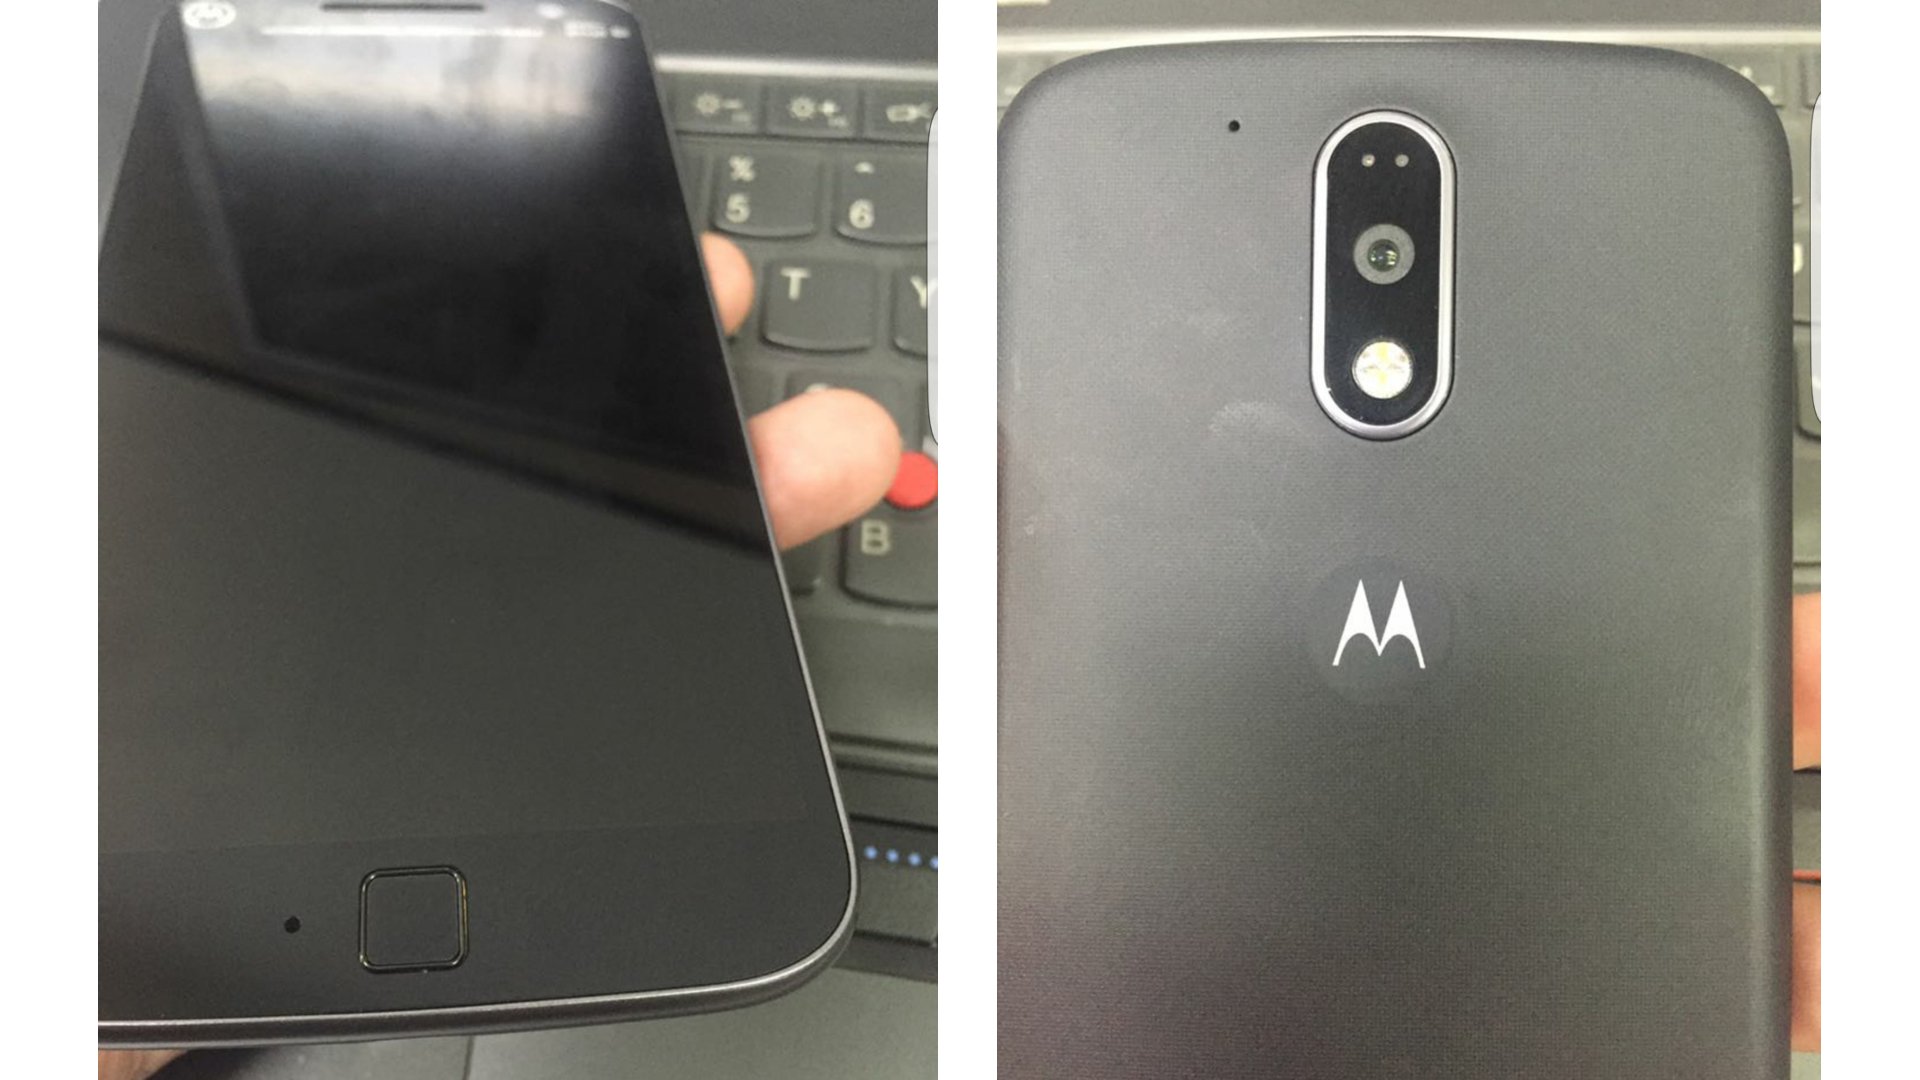 Motorola Moto G4 - Leaked Images